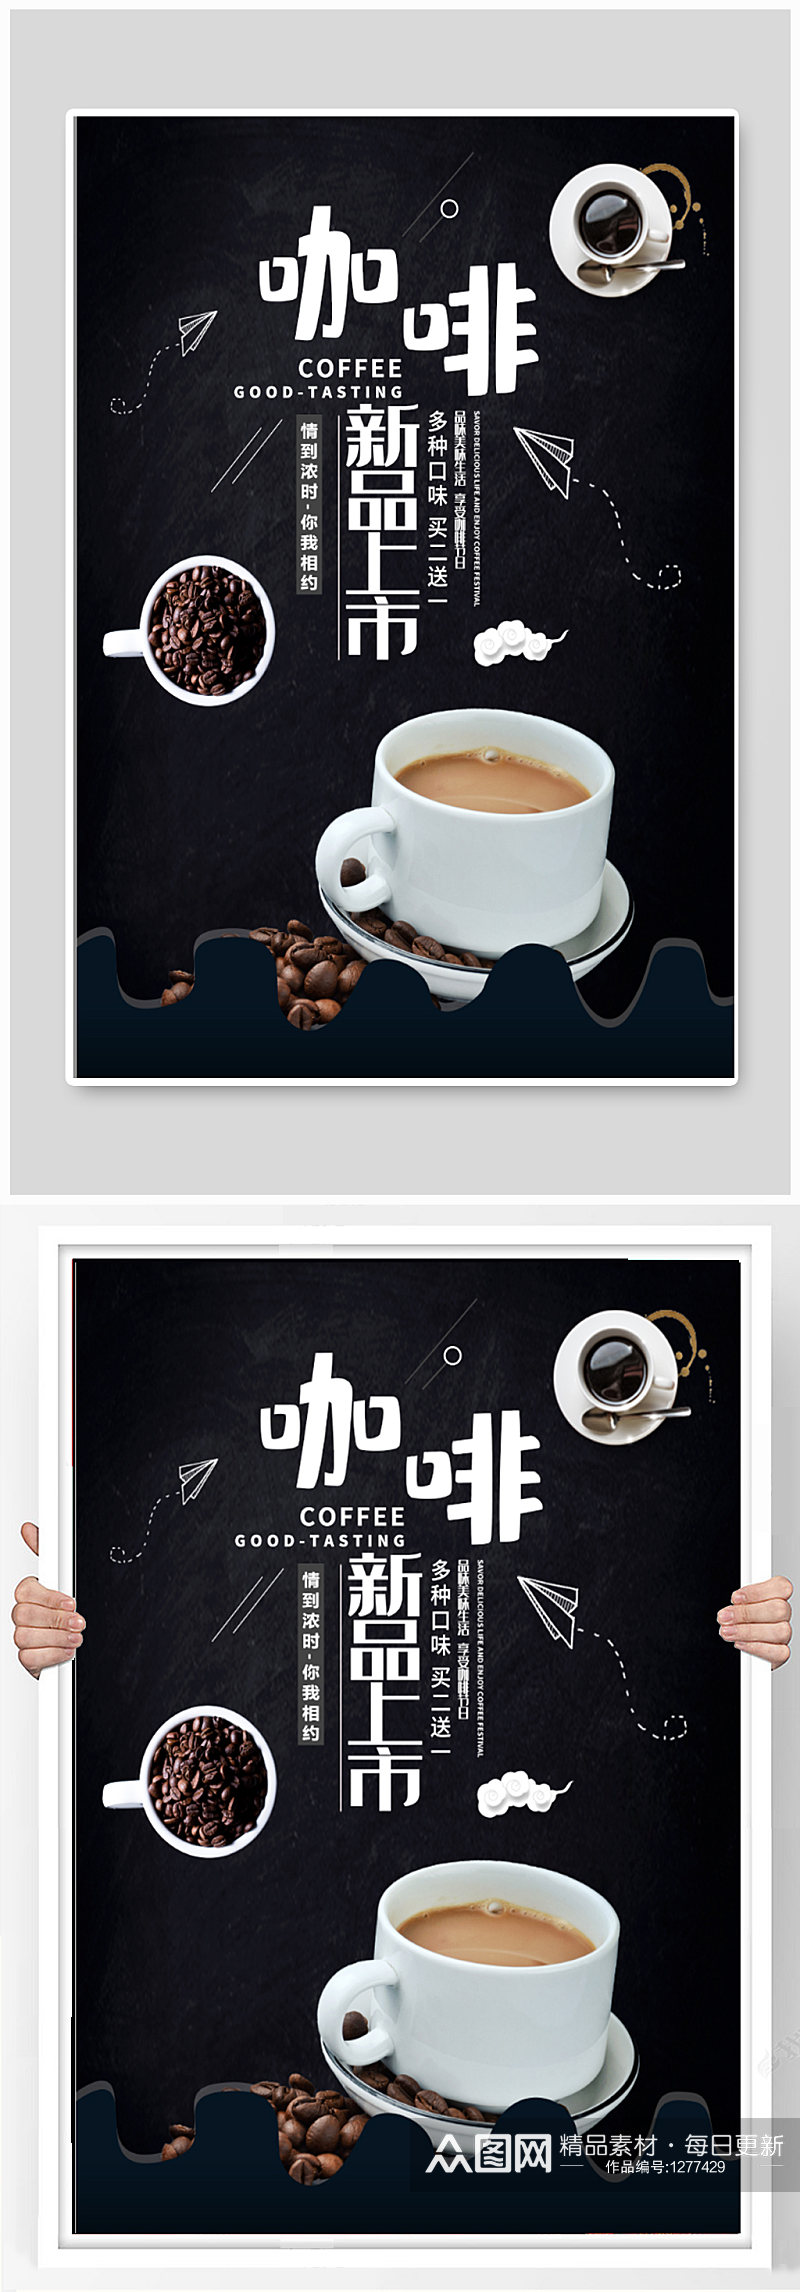 咖啡新品上市促销海报素材